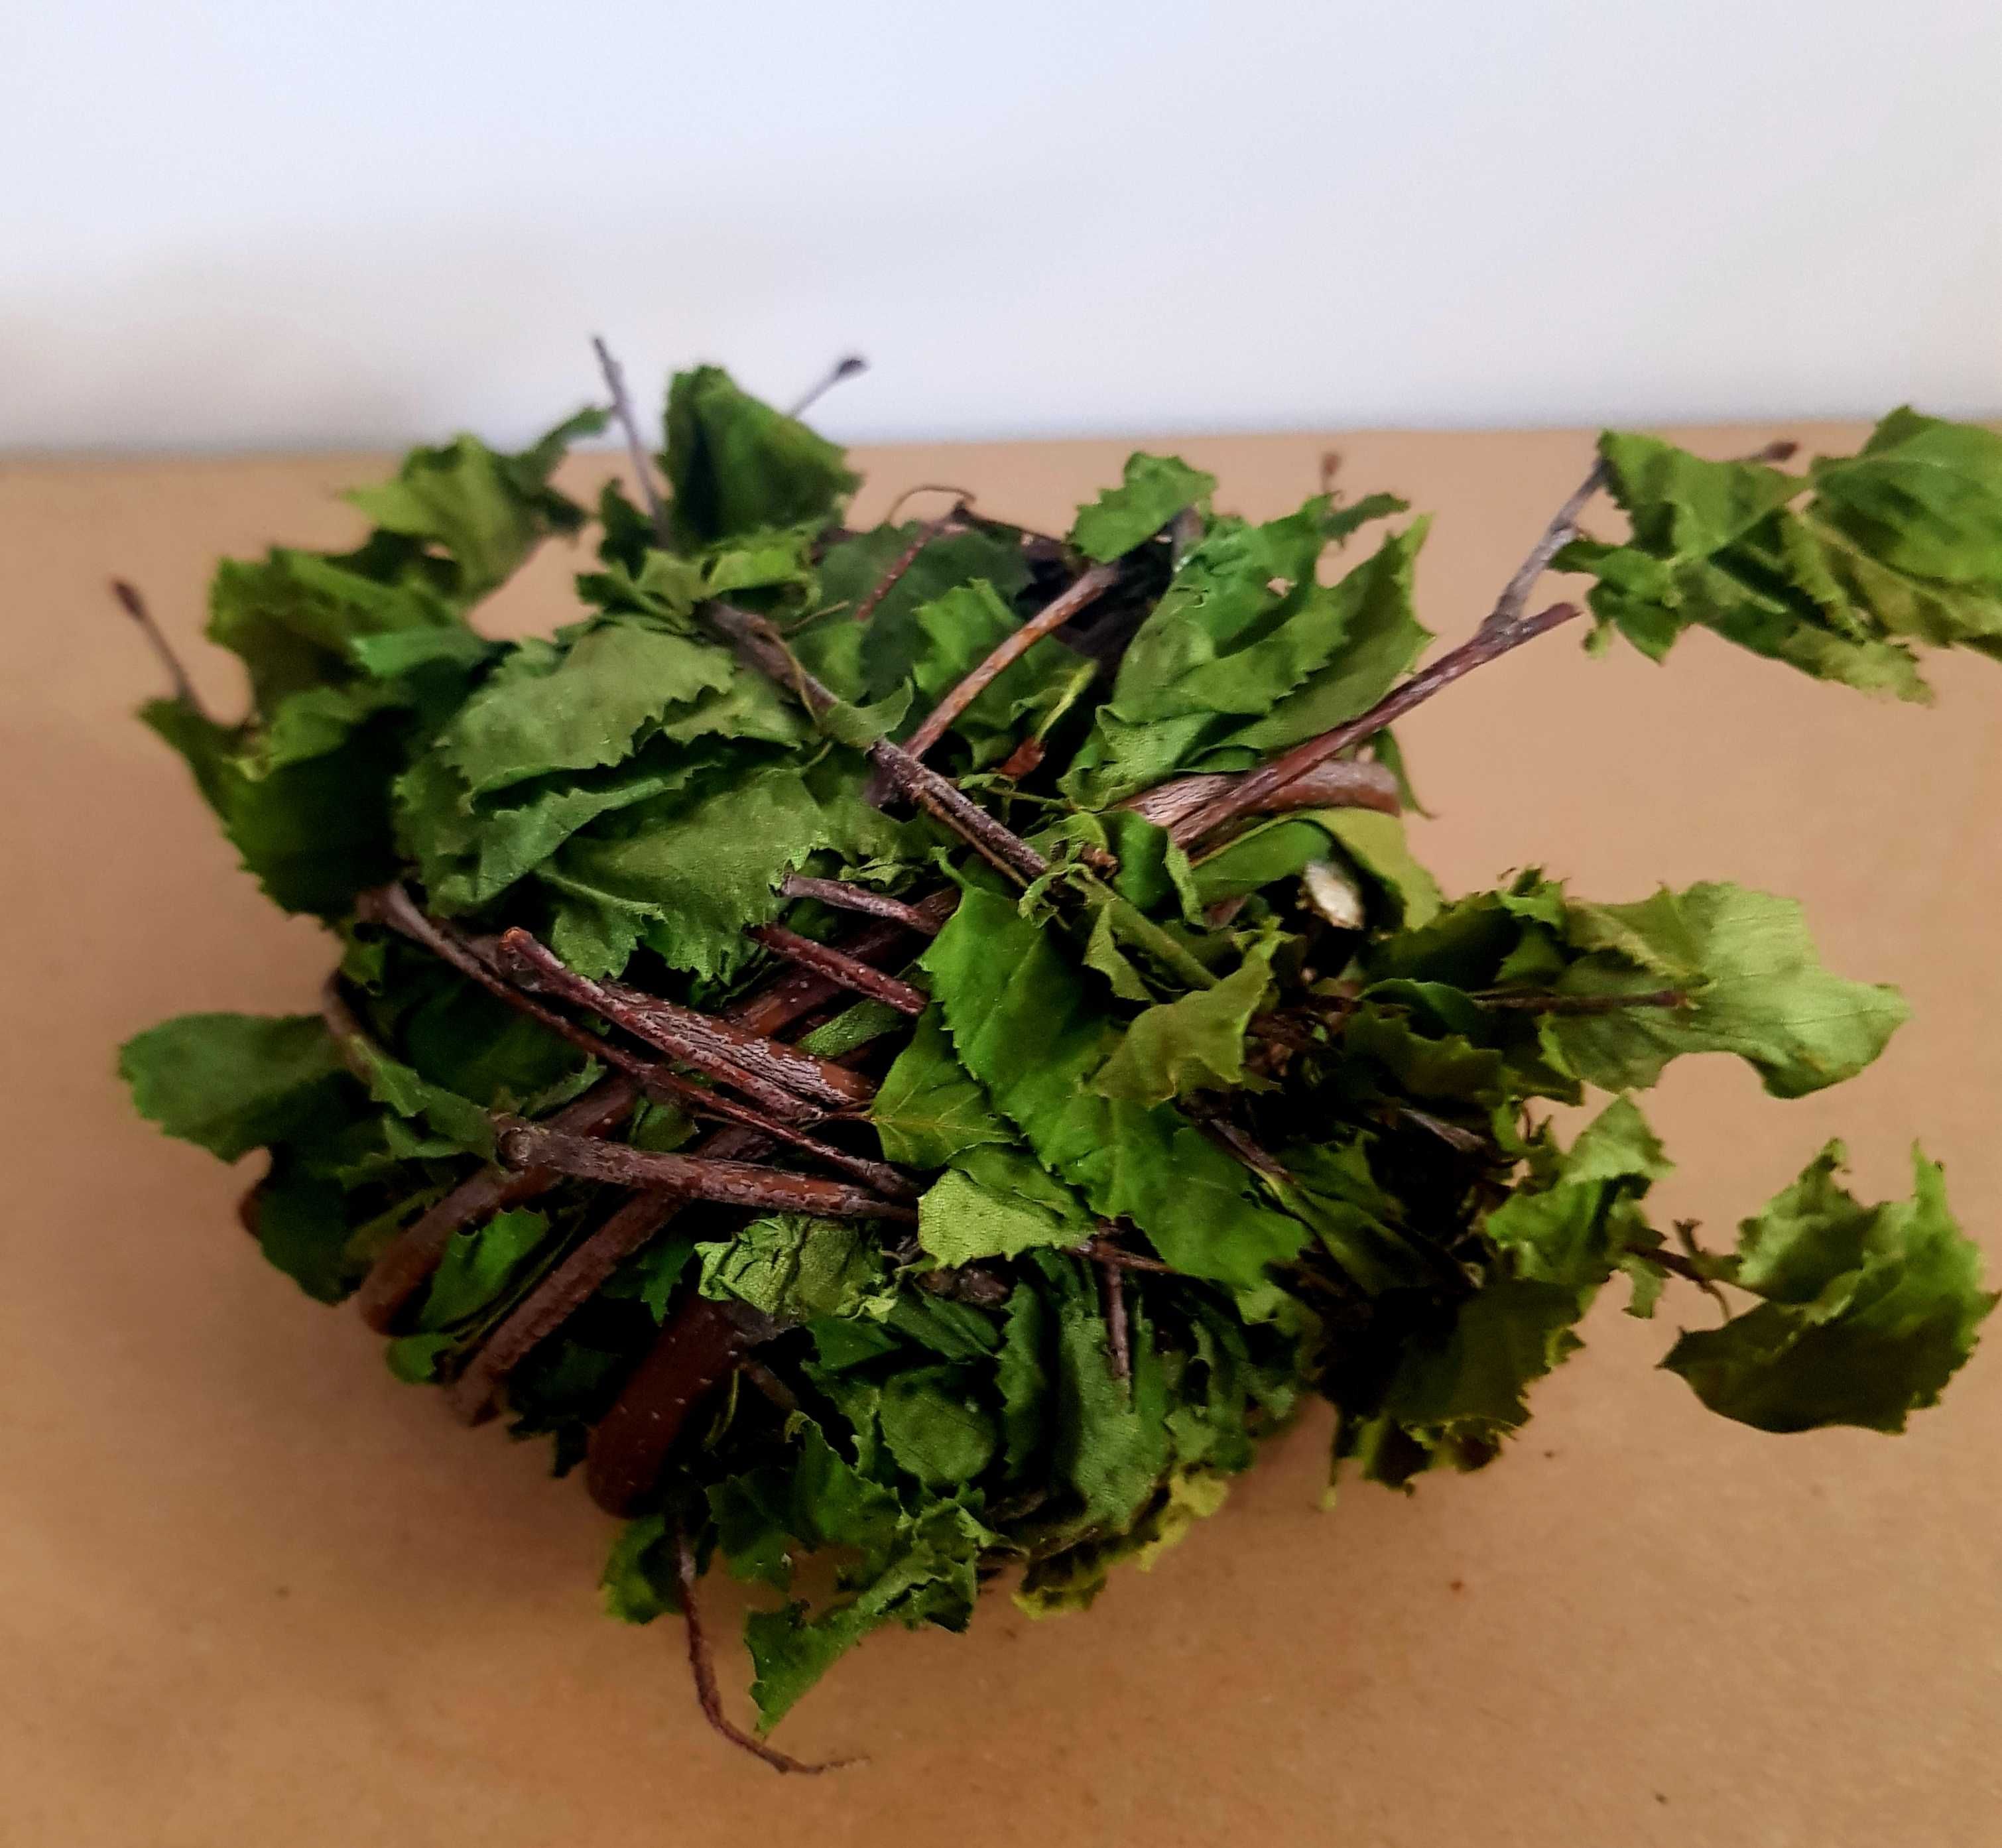 Kula brzozowa z liśćmi 9-10 cm 60g zabawka dla królików Folwark Okopy